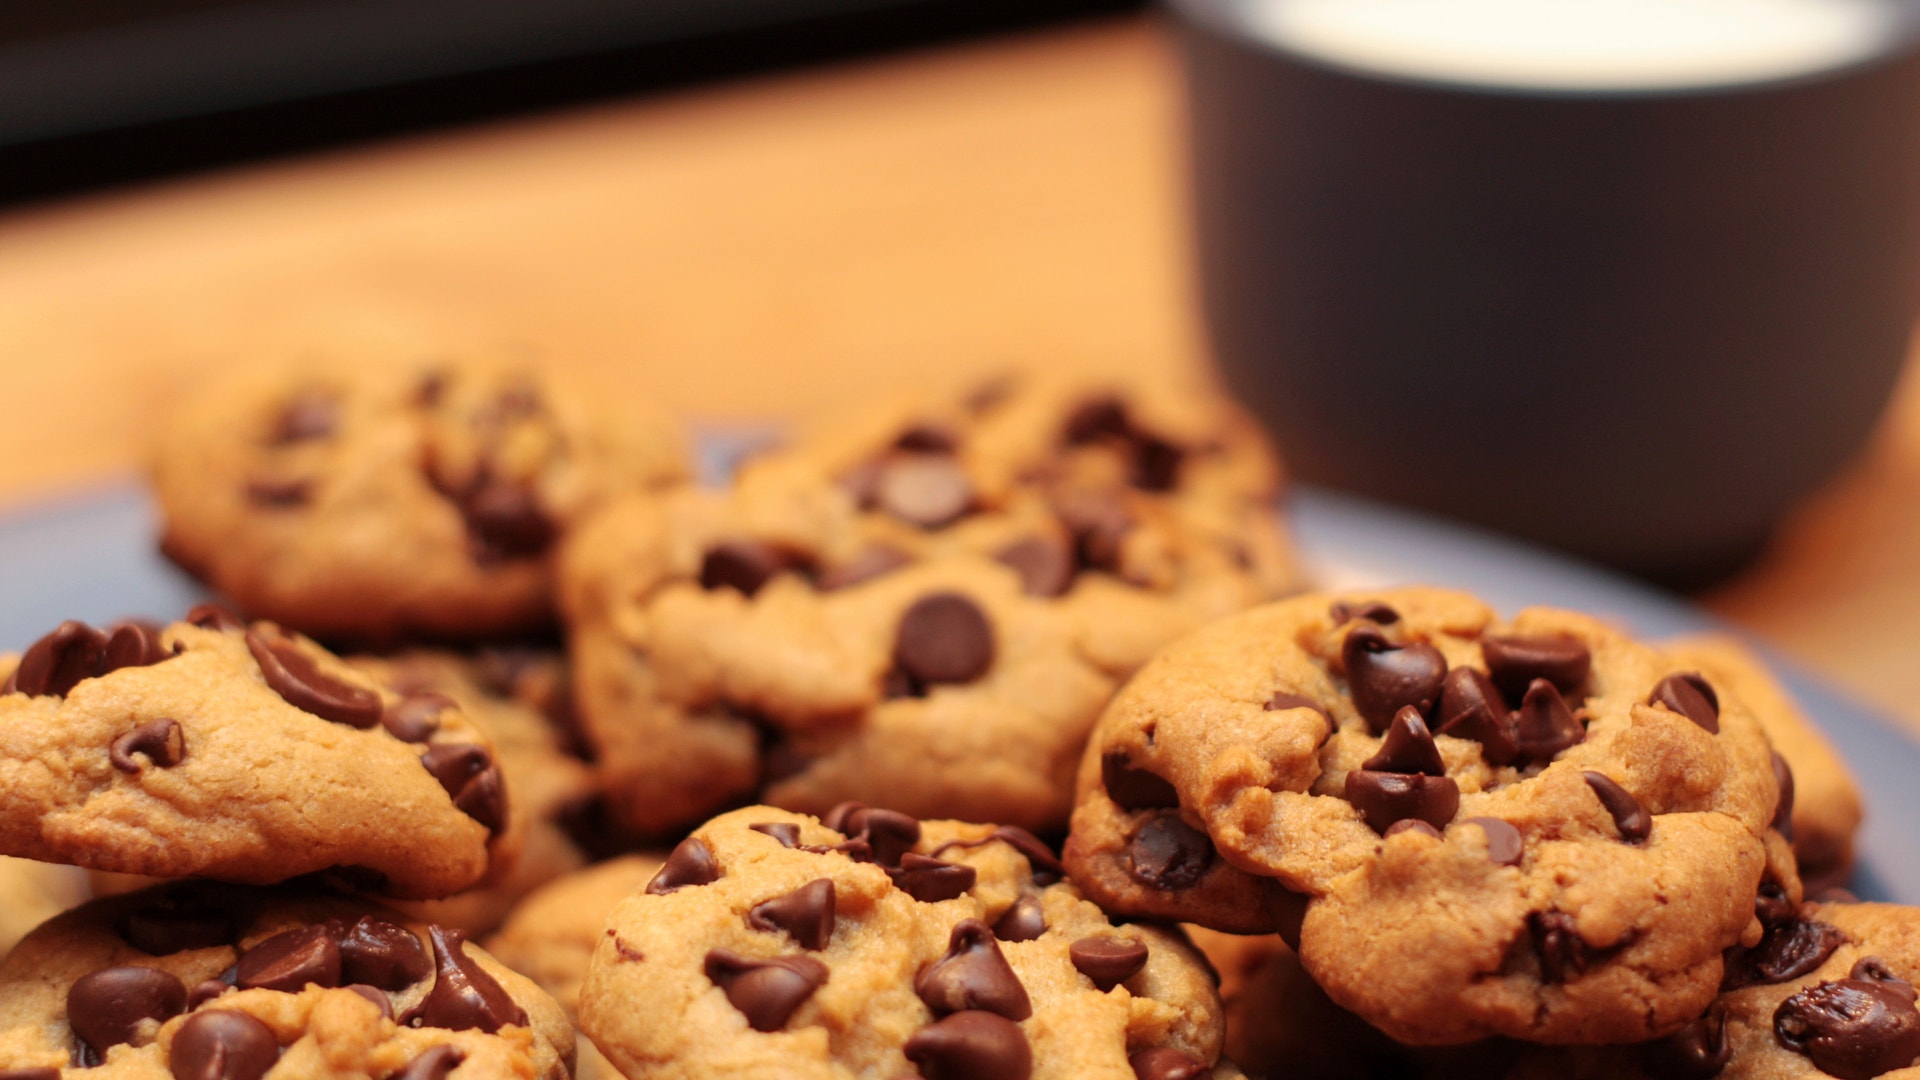 Cookies day. Песочное печенье кукис. Американское шоколадное печенье кукис. Песочное печенье с шоколадной крошкой. Американское песочное печенье с шоколадной крошкой.